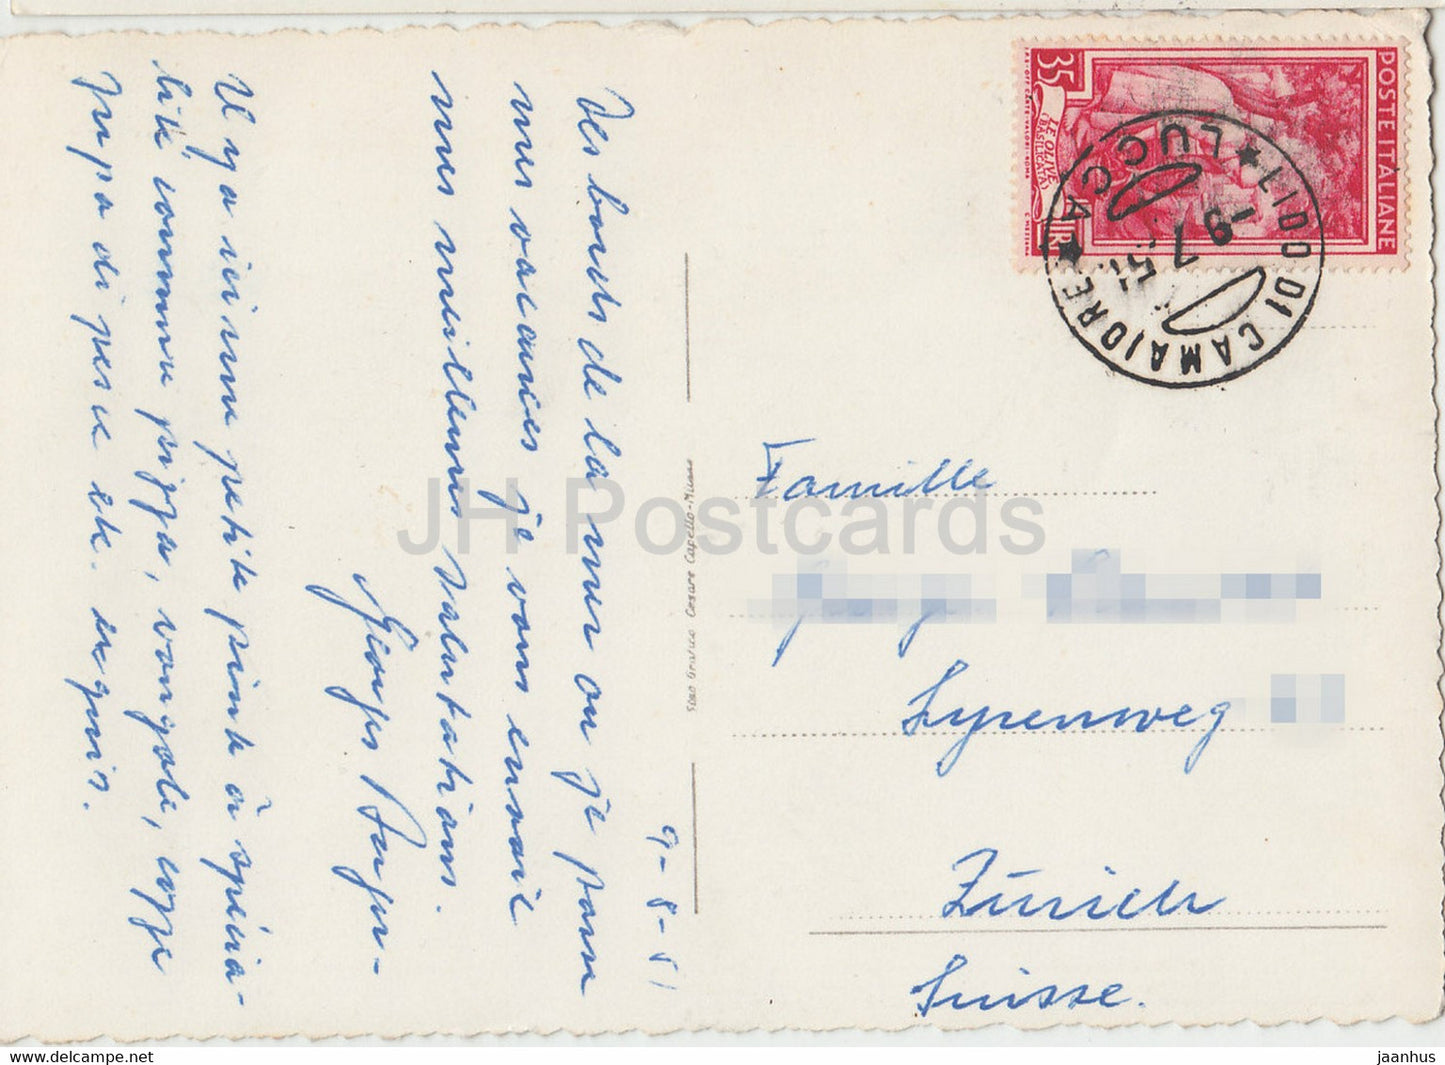 Lido di Camaiore - Piazza Matteotti - square - old postcard - 1951 - Italy - used